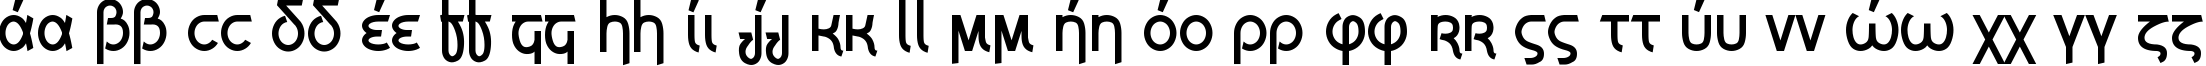 Пример написания английского алфавита шрифтом Grecian Formula